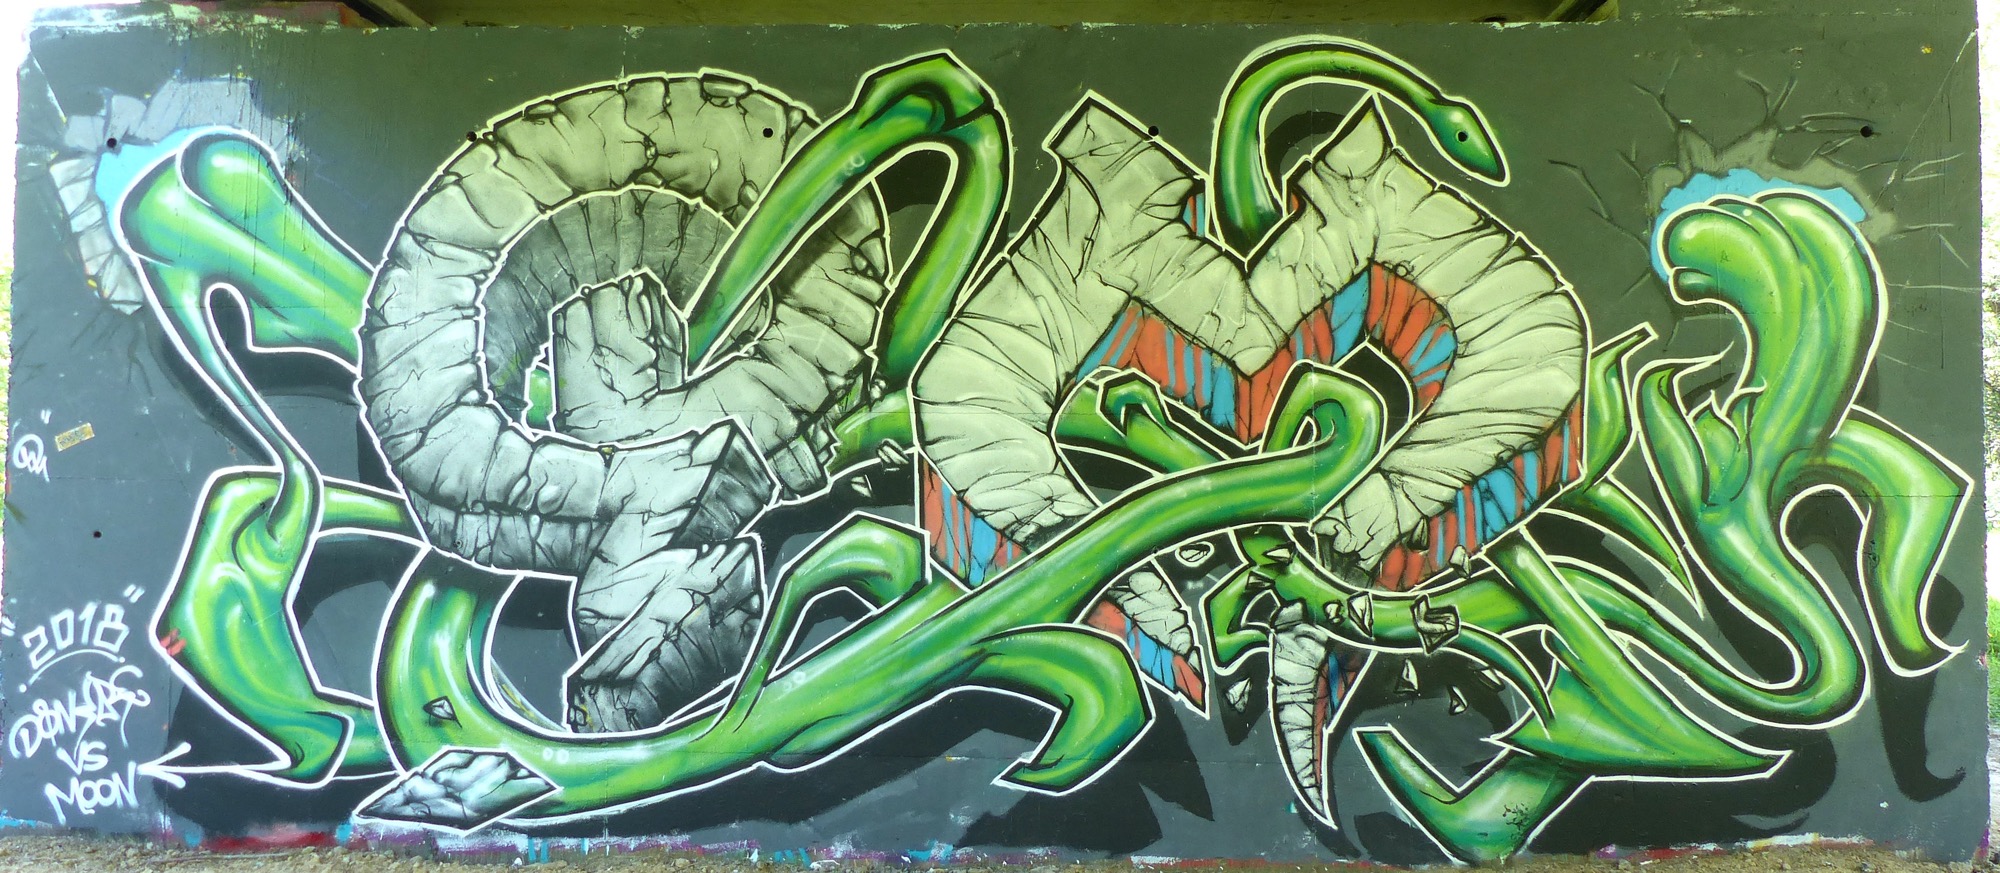 Graffiti 41  captured by Rabot in Rezé France